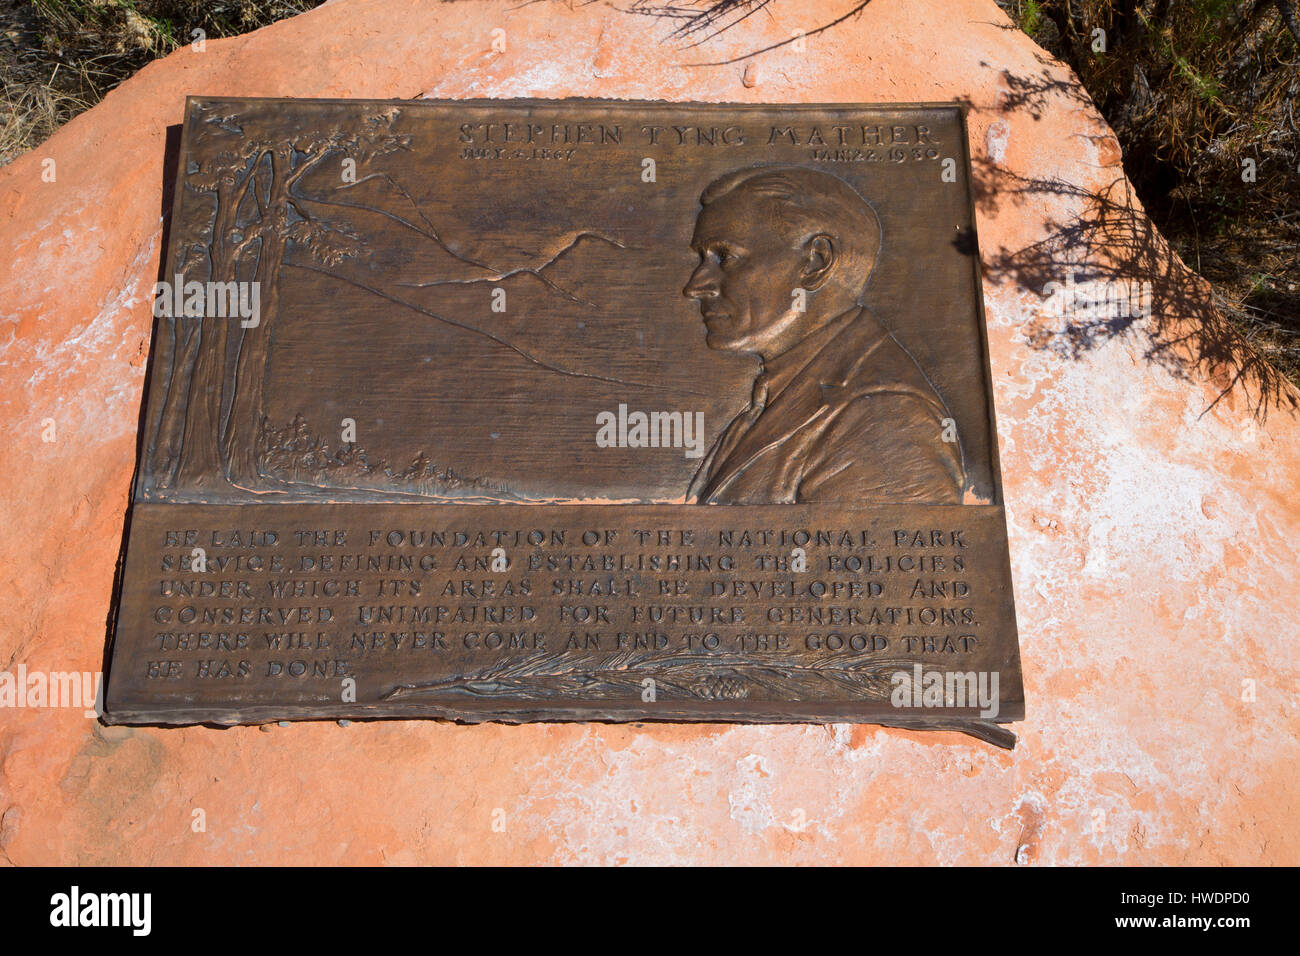 Mather plaque, Canyonlands National Park, Utah Stock Photo